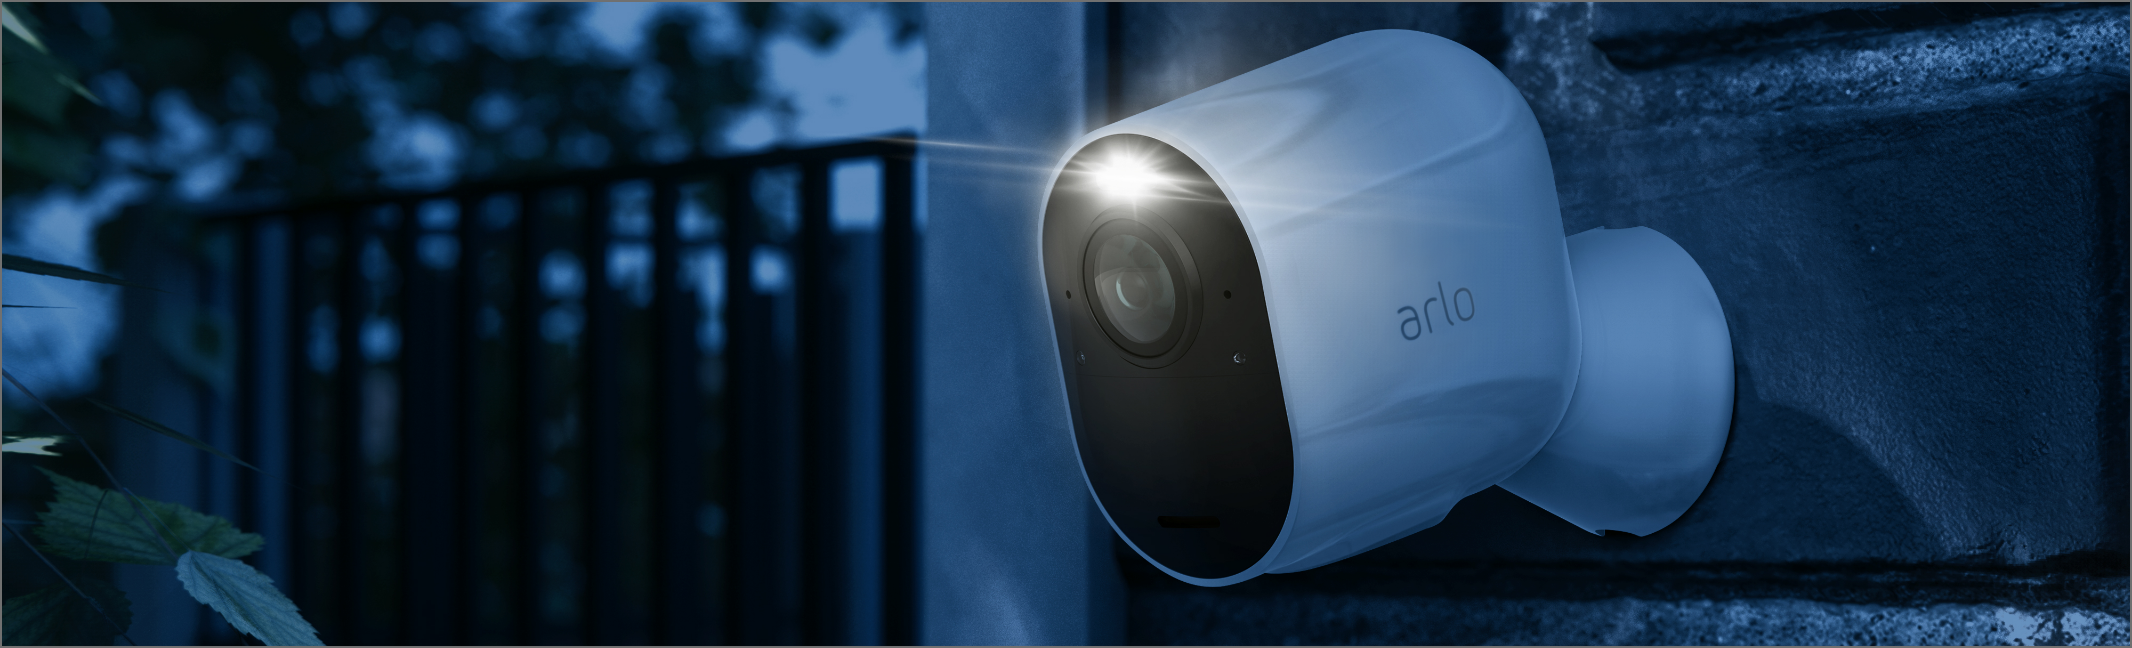 Et nærbilde av et Arlo Wireless Outdoor Security Camera. Innebygde spotlights og sirener avskrekker inntrengere, mens mer detaljert video gir deg det beste bildet.